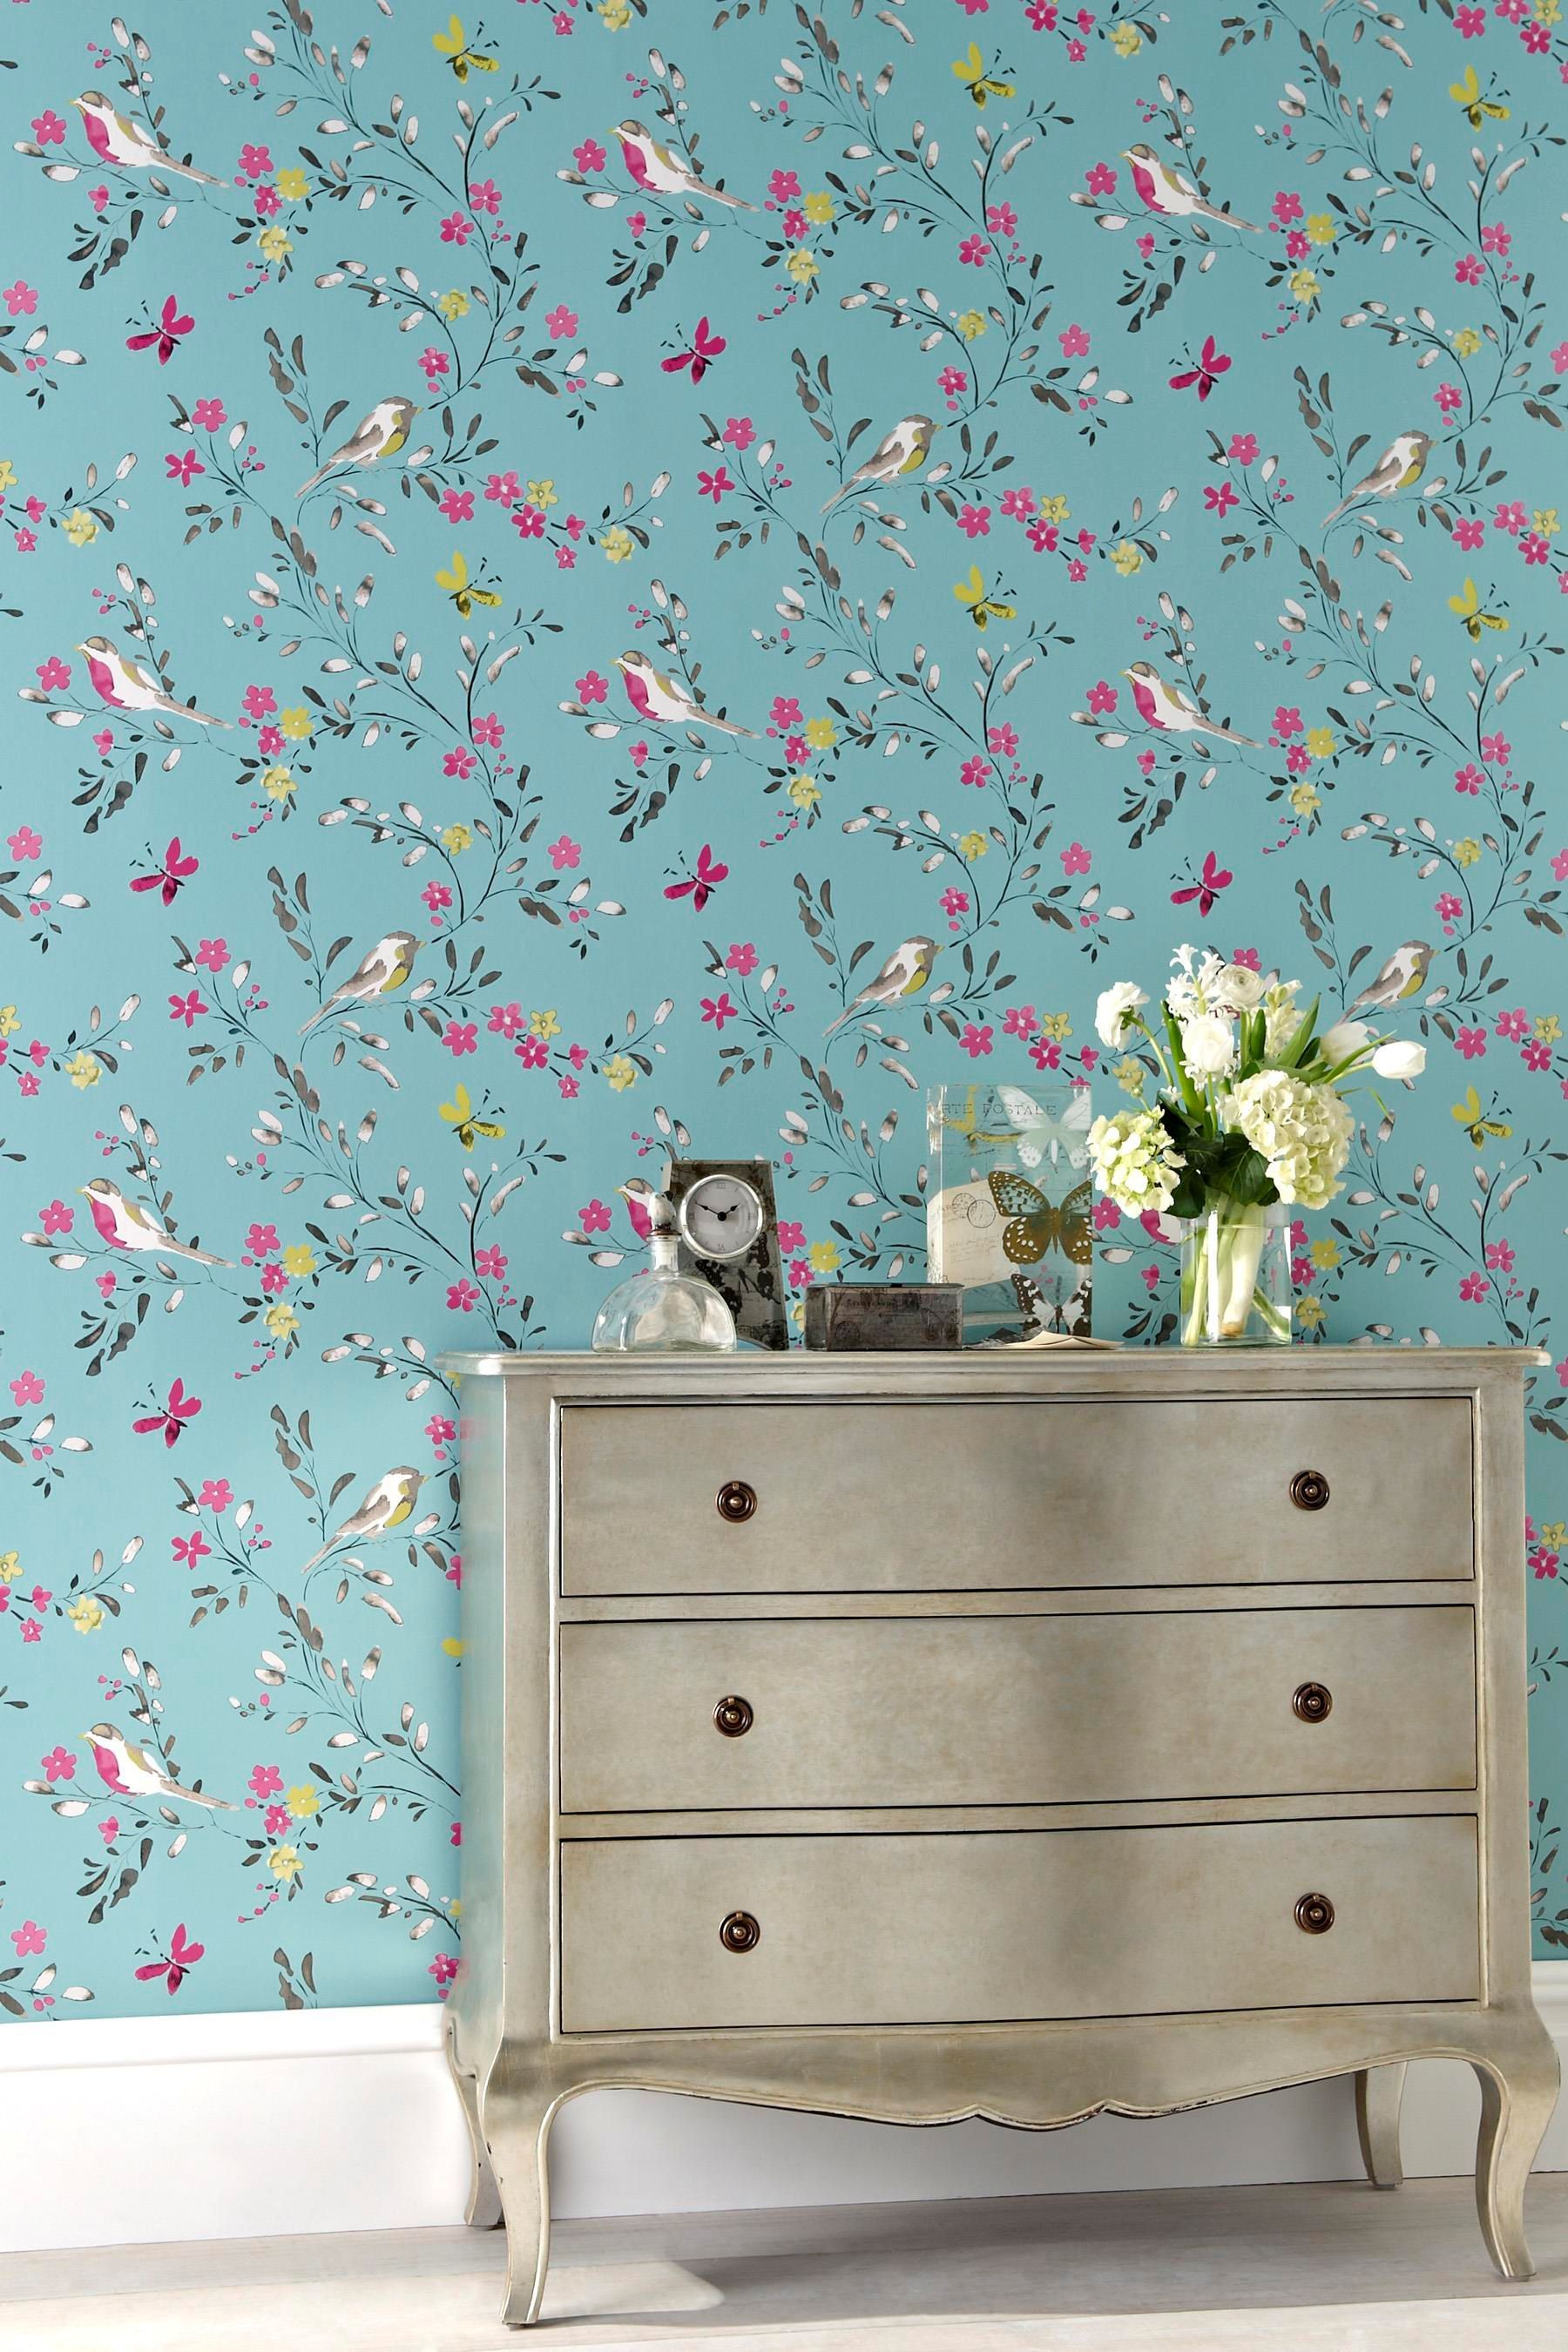 teal bird wallpaper,chest of drawers,wallpaper,wall,dresser,furniture